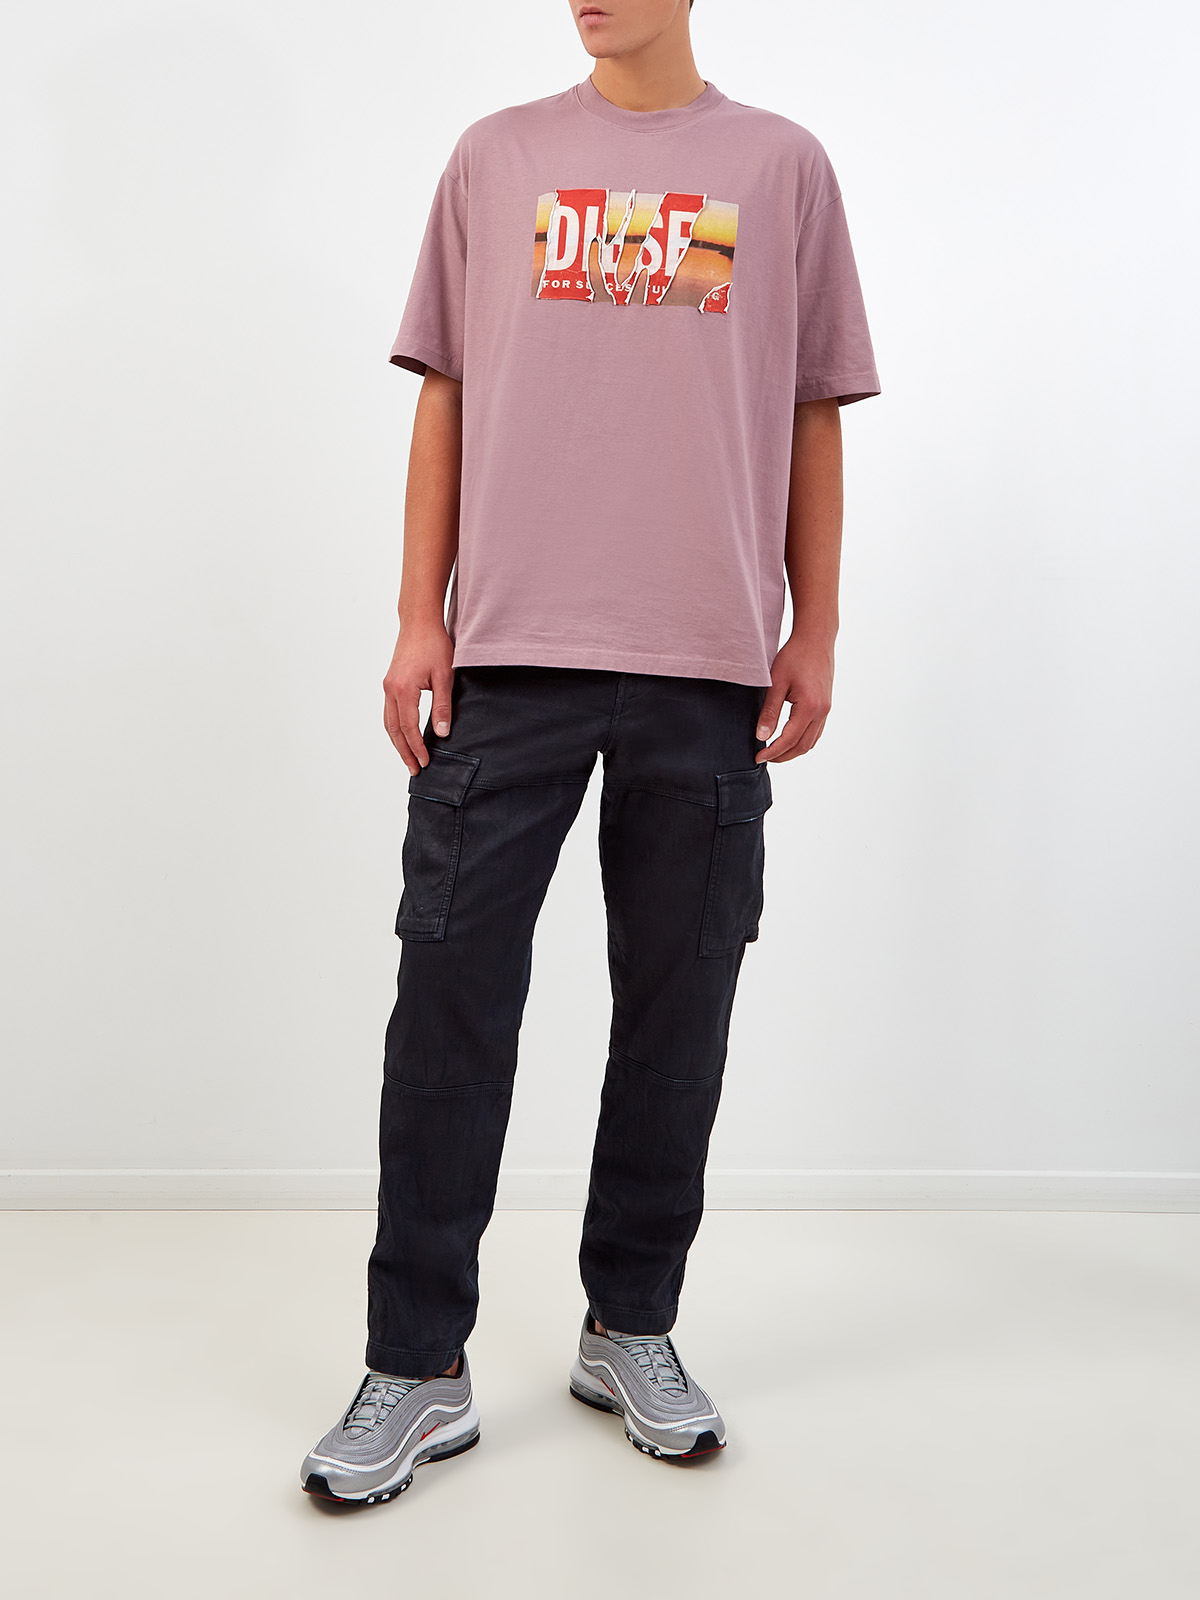 Свободная футболка T-Wash из хлопка с двойным принтом DIESEL, цвет розовый, размер XS;S;M;L;XL;2XL - фото 2